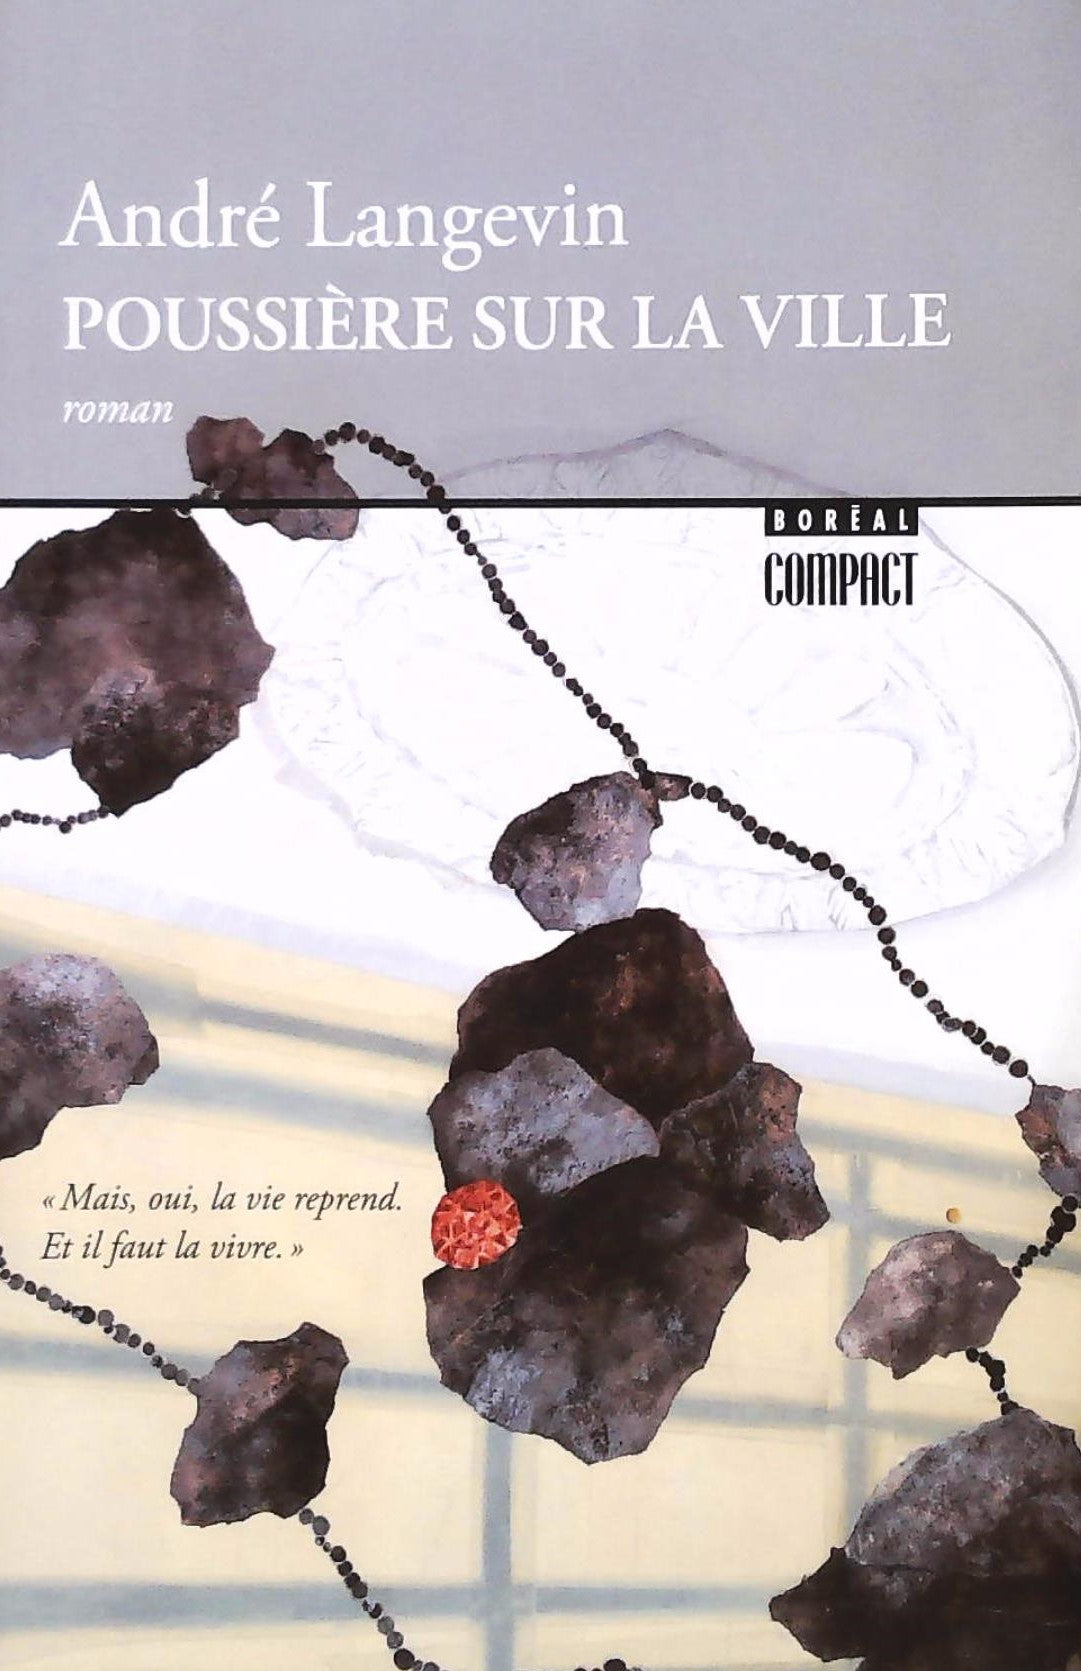 Livre ISBN 2764623372 Poussière sur la ville (André Langevin)